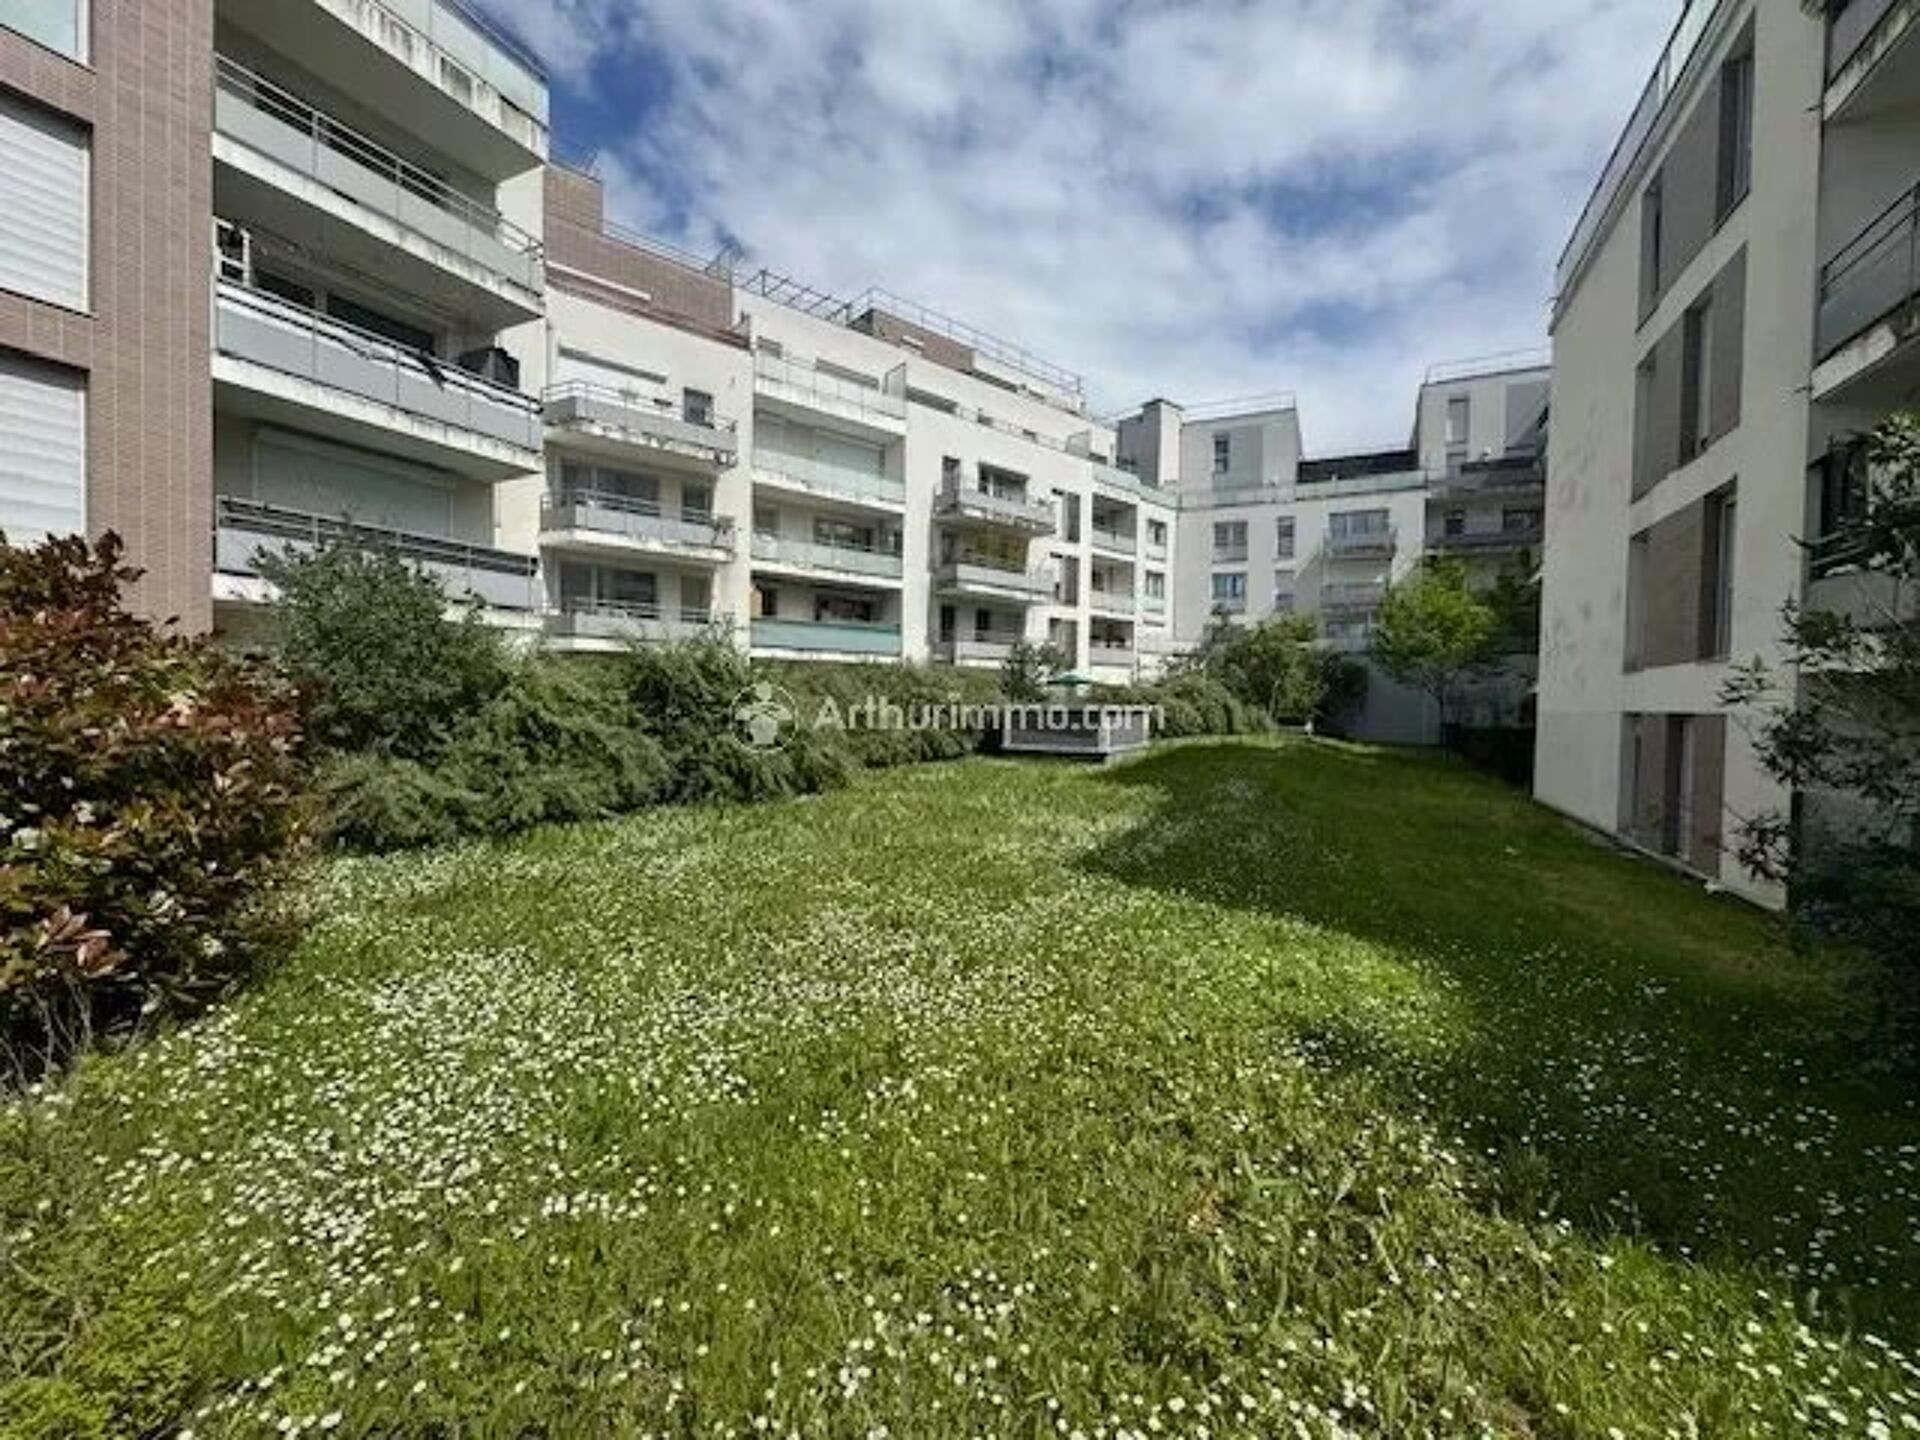 Vente Appartement 59m² 3 Pièces à Villiers-le-Bel (95400) - Arthurimmo